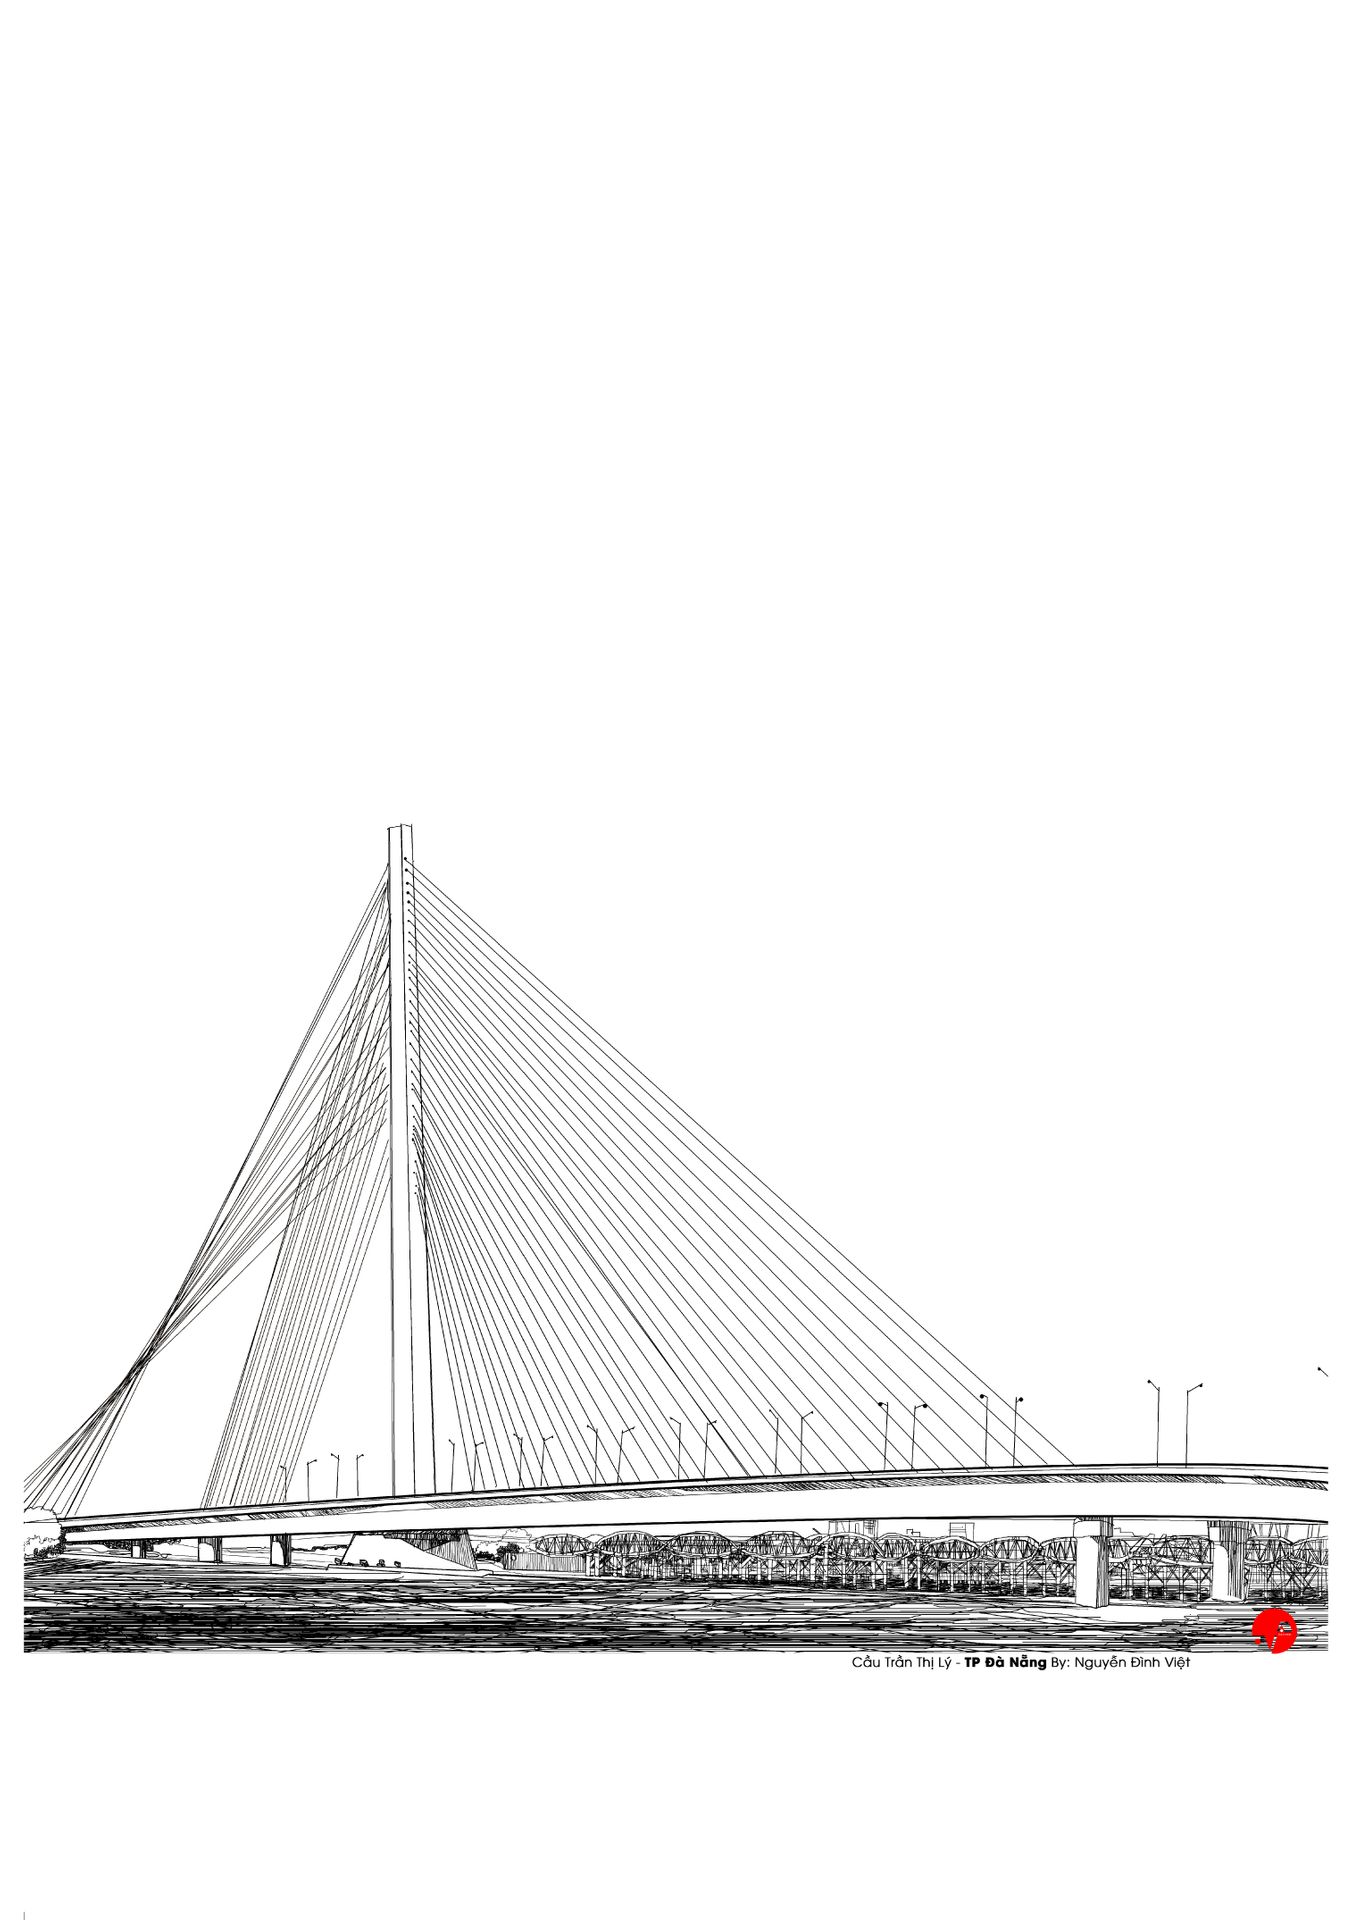 Cầu Trần Thị Lý là một trong những cây cầu đẹp nhất ở Đà Nẵng. Với thiết kế hiện đại và kiến trúc sang trọng, cầu sẽ khiến bạn bị cuốn hút từ cái nhìn đầu tiên. Đừng bỏ lỡ cơ hội ngắm nhìn vẻ đẹp của Cầu Trần Thị Lý. Translation: Tran Thi Ly Bridge is one of the most beautiful bridges in Danang. With modern design and elegant architecture, the bridge will catch your attention from the first sight. Don\'t miss the chance to admire the beauty of Tran Thi Ly Bridge.